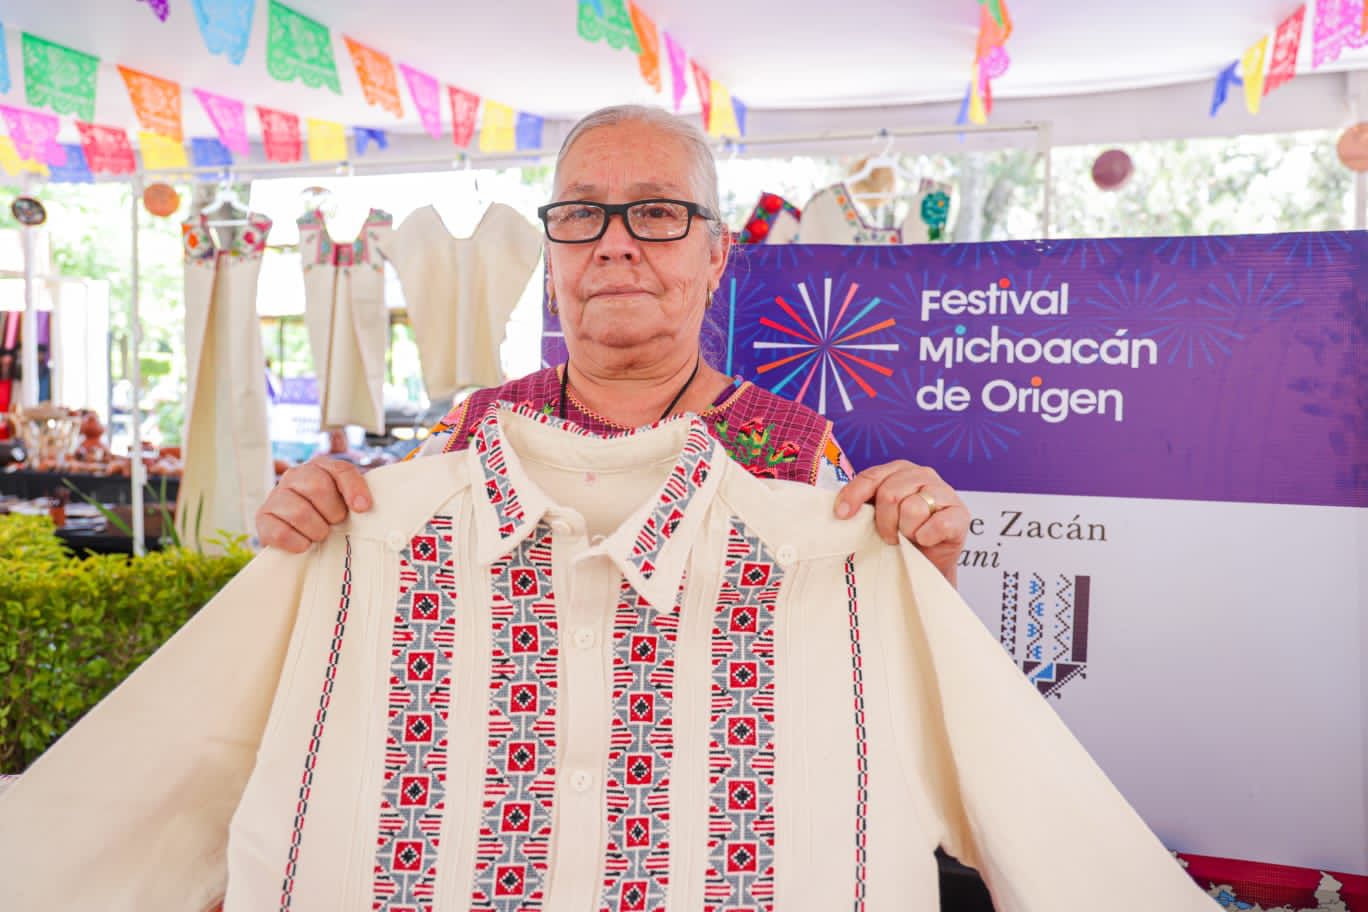 Prevén derrama económica de 2 mdp por venta de artesanías en Festival Michoacán de Origen